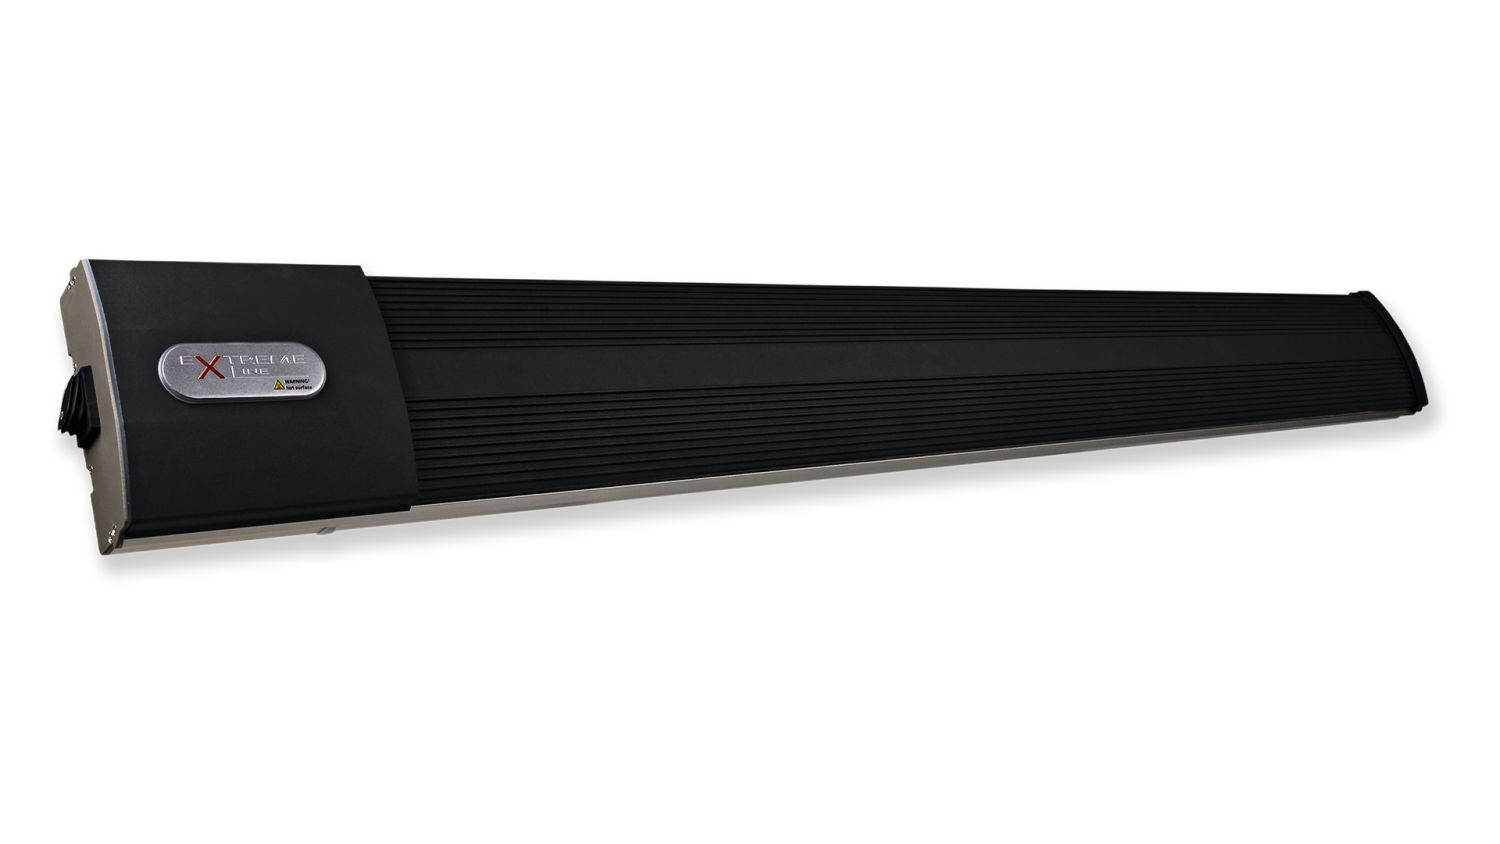 HeatZone black 3200 W Heizstrahler Infrarotstrahler Dunkelstrahler (ohne Steuerung), dieser Dunkelstrahler liefert perfekte Wohlfühlwärme